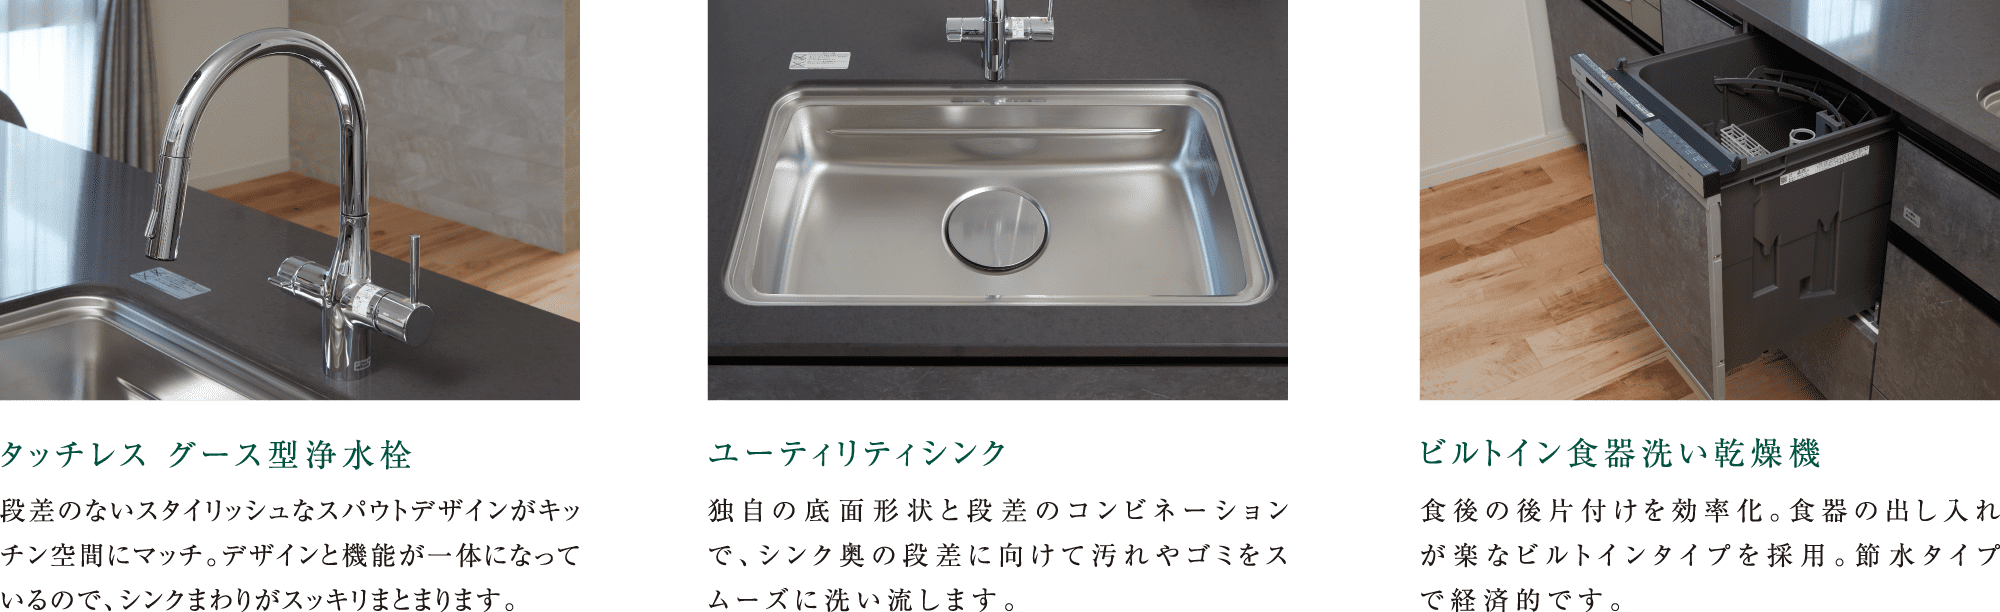 タッチレス グース型浄水栓 / ユーティリティシンク / ビルトイン食器洗い乾燥機